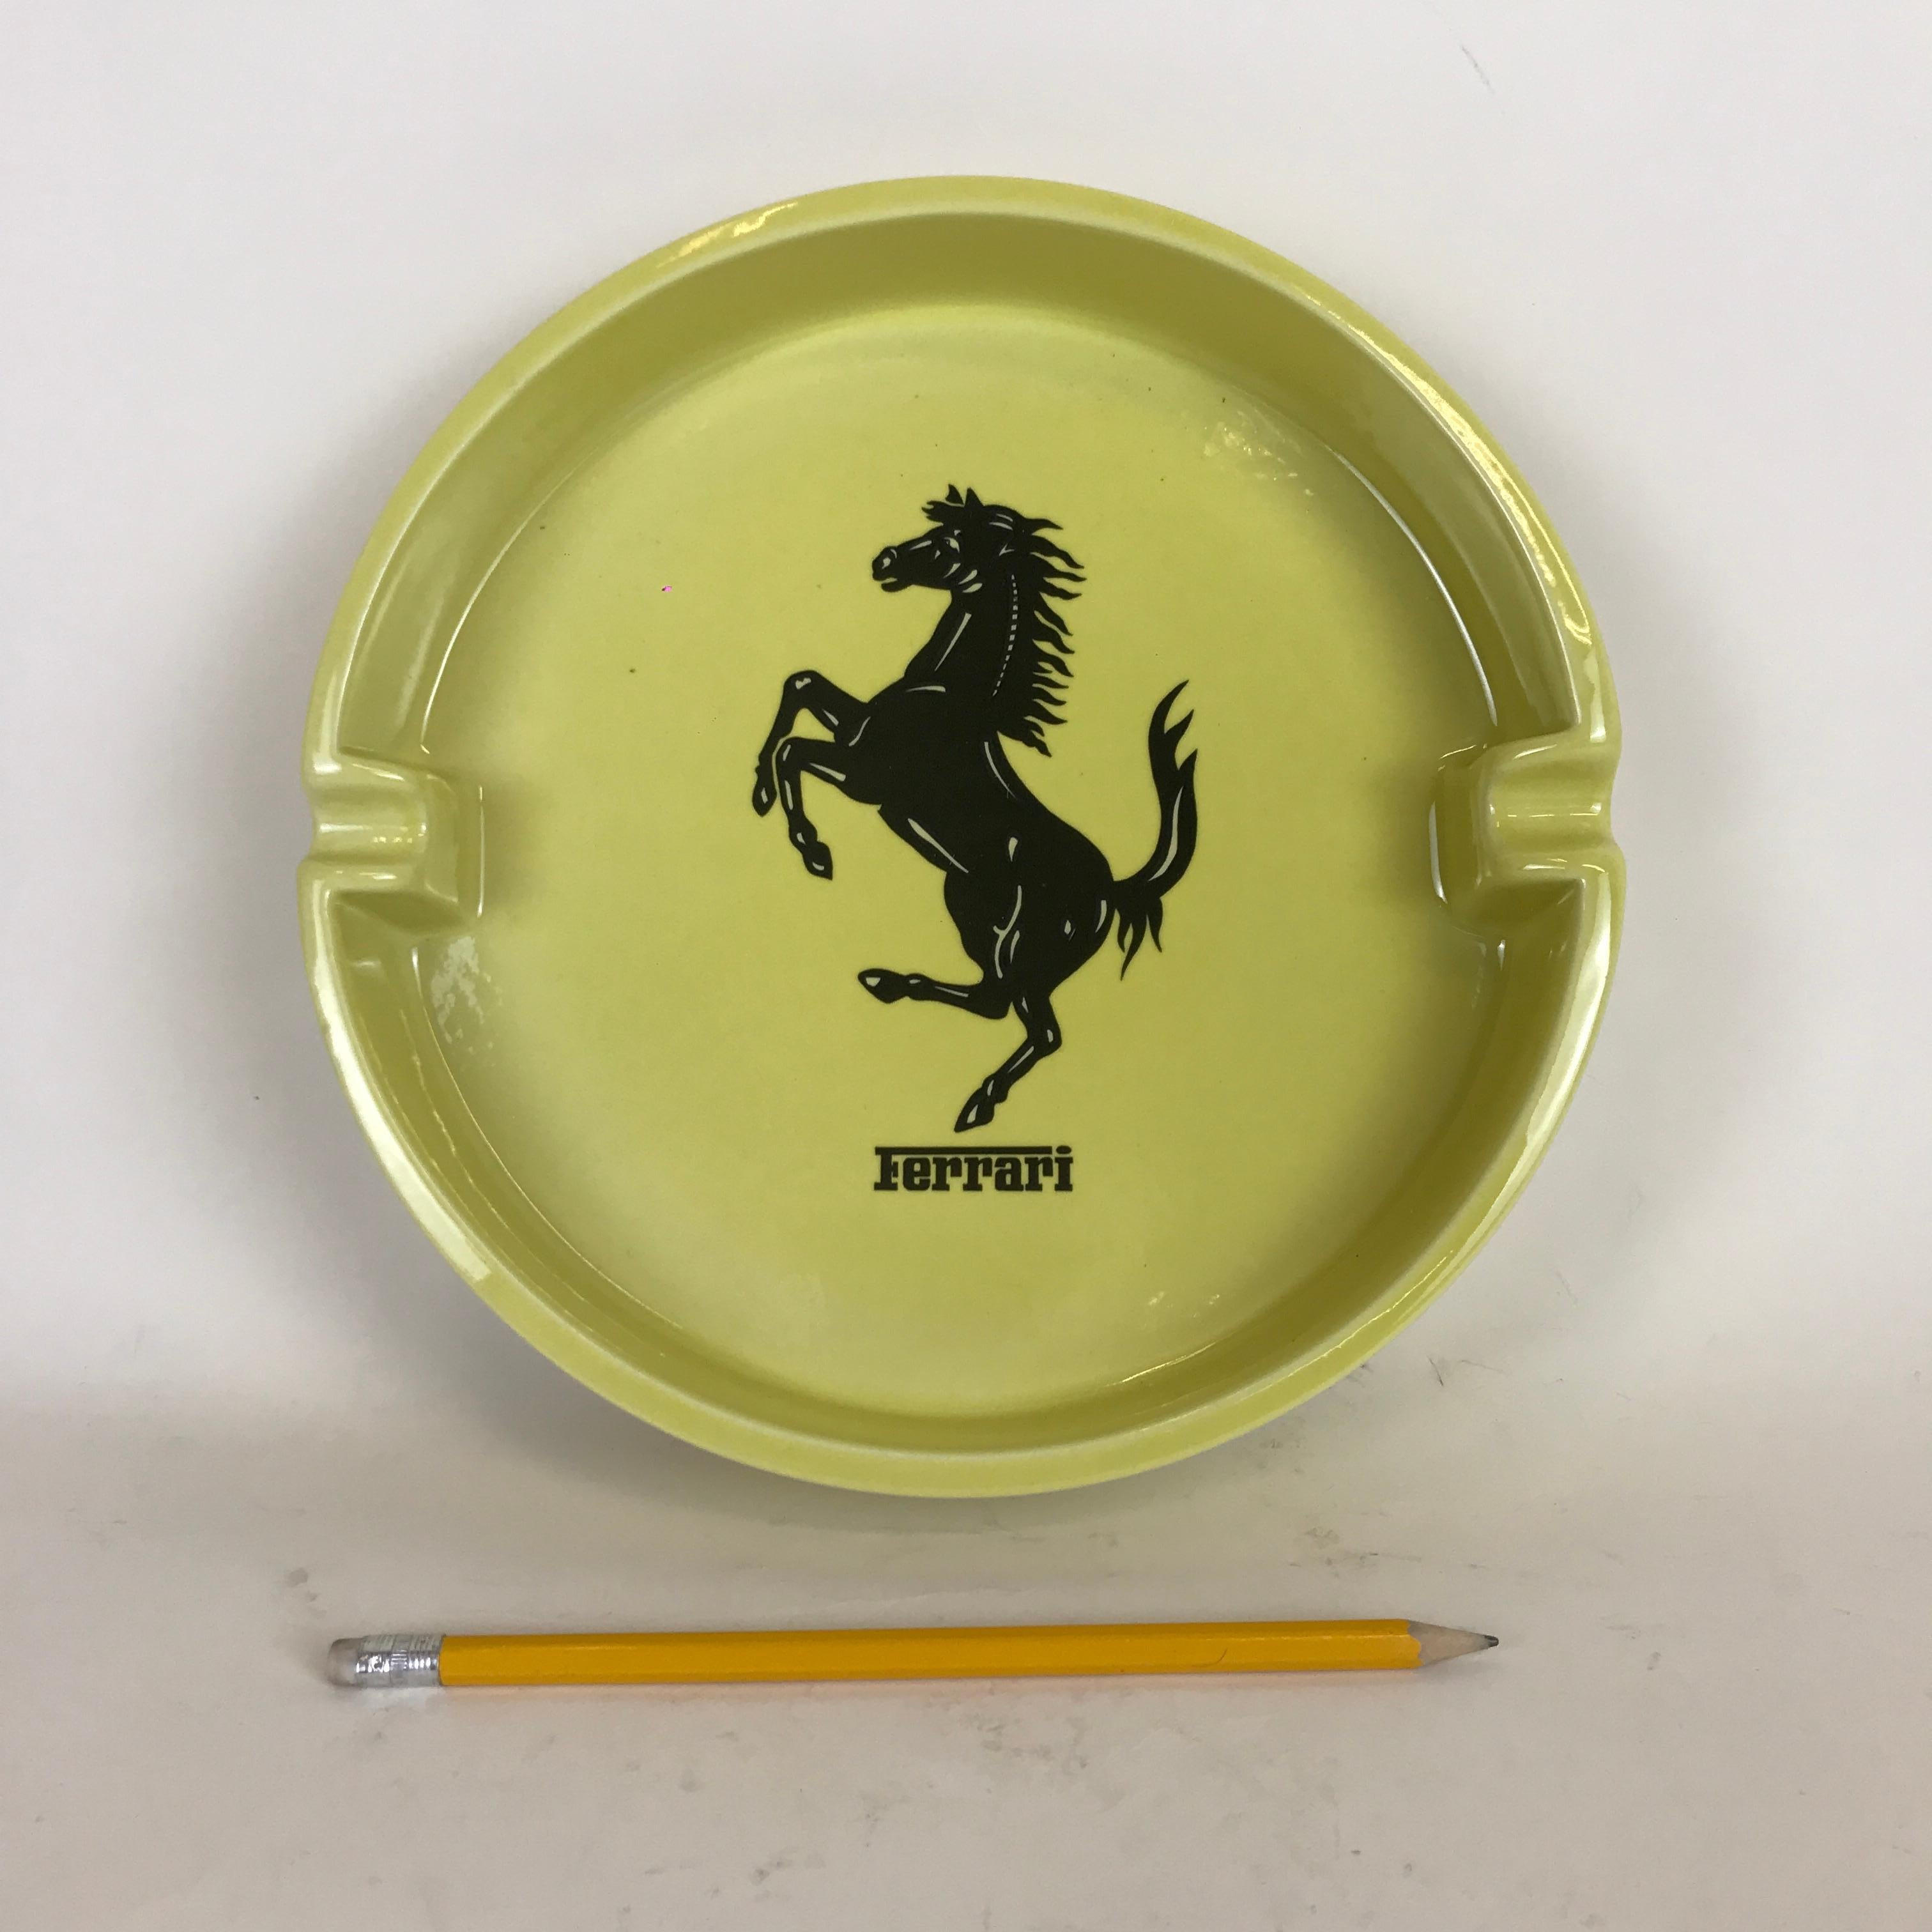 Cendrier publicitaire Ferrari en céramique jaune fabriqué en Italie par Bitossi dans les années 1980. Ce grand cendrier circulaire est orné du symbole noir du cheval Ferrari au centre et d'un logo Ferrari à l'extérieur sur la bordure. Il est aussi